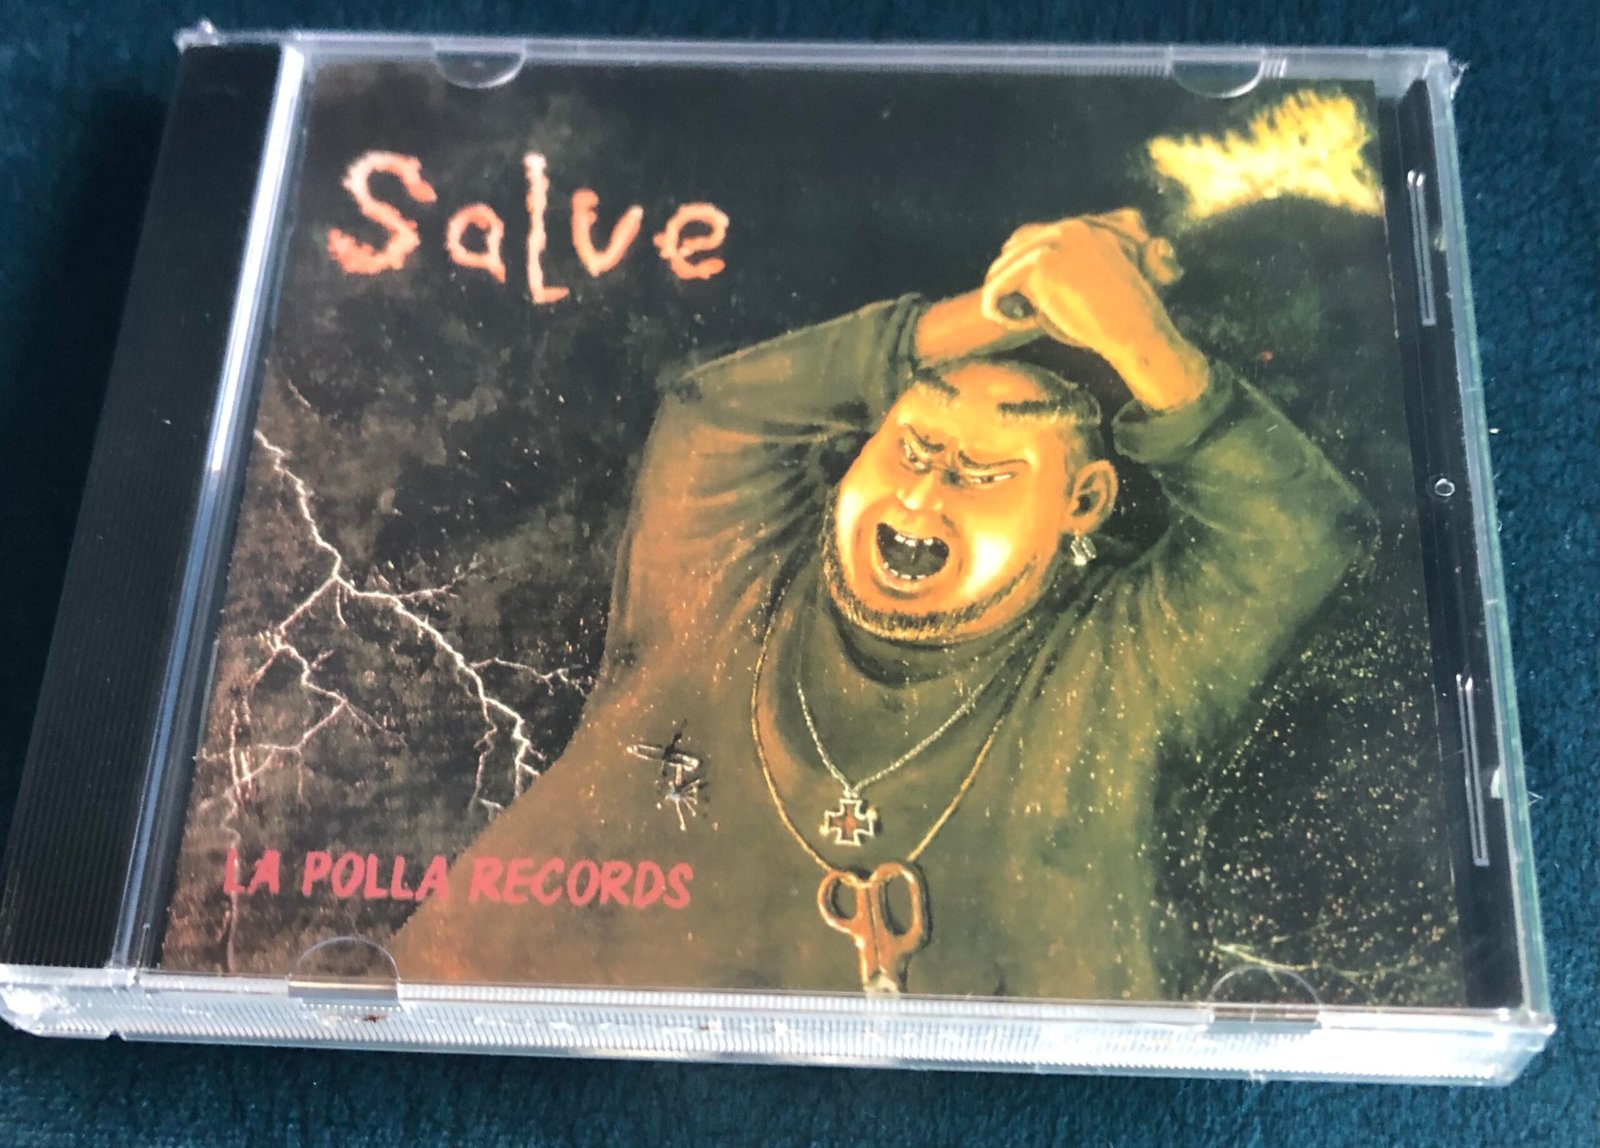 La Polla Records – Salve